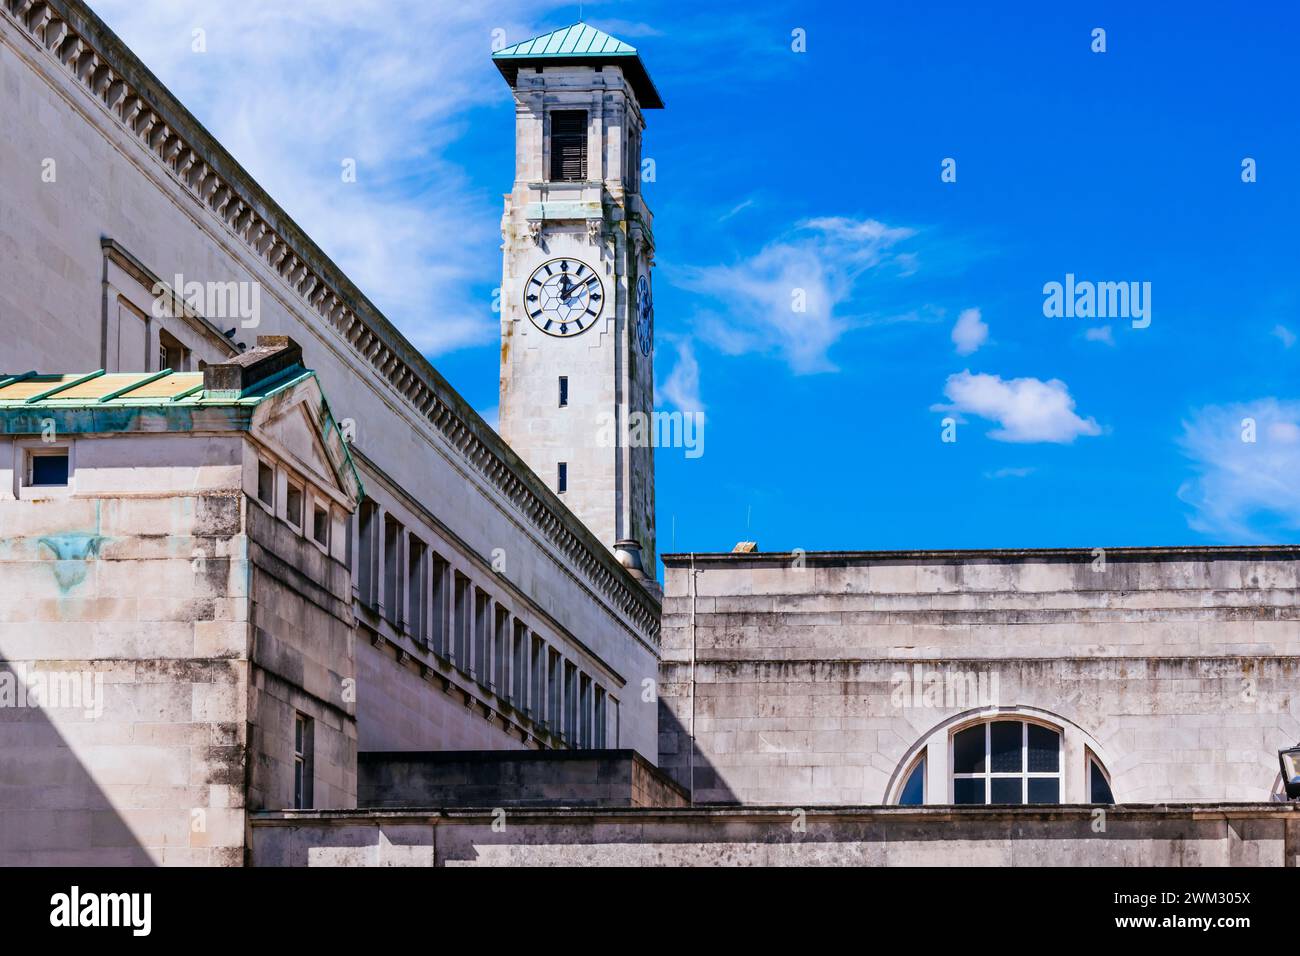 La Torre de Kimber. Torre de reloj de piedra en el Centro Cívico diseñada por el arquitecto Ernest Berry Webber. Southampton, Hampshire, Inglaterra, Reino Unido, Reino Unido, euro Foto de stock